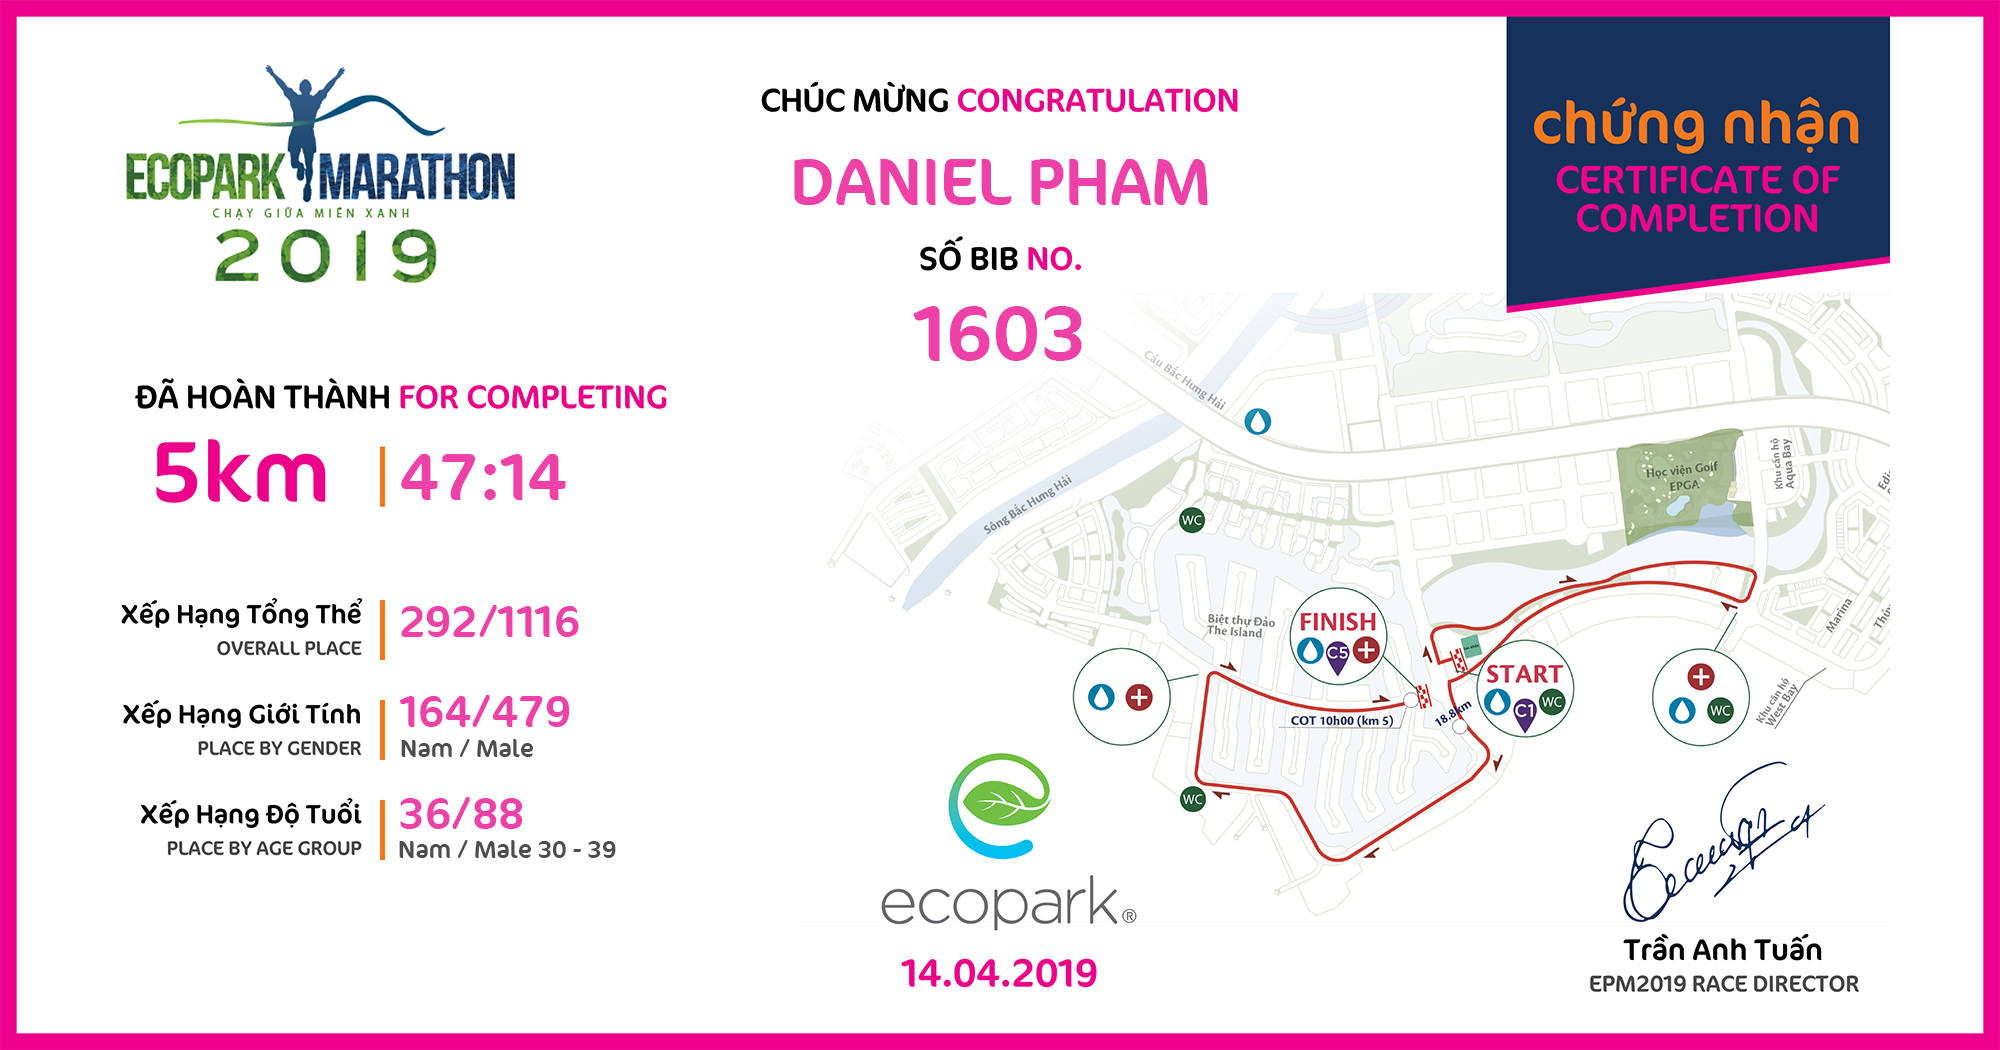 1603 - DANIEL PHAM